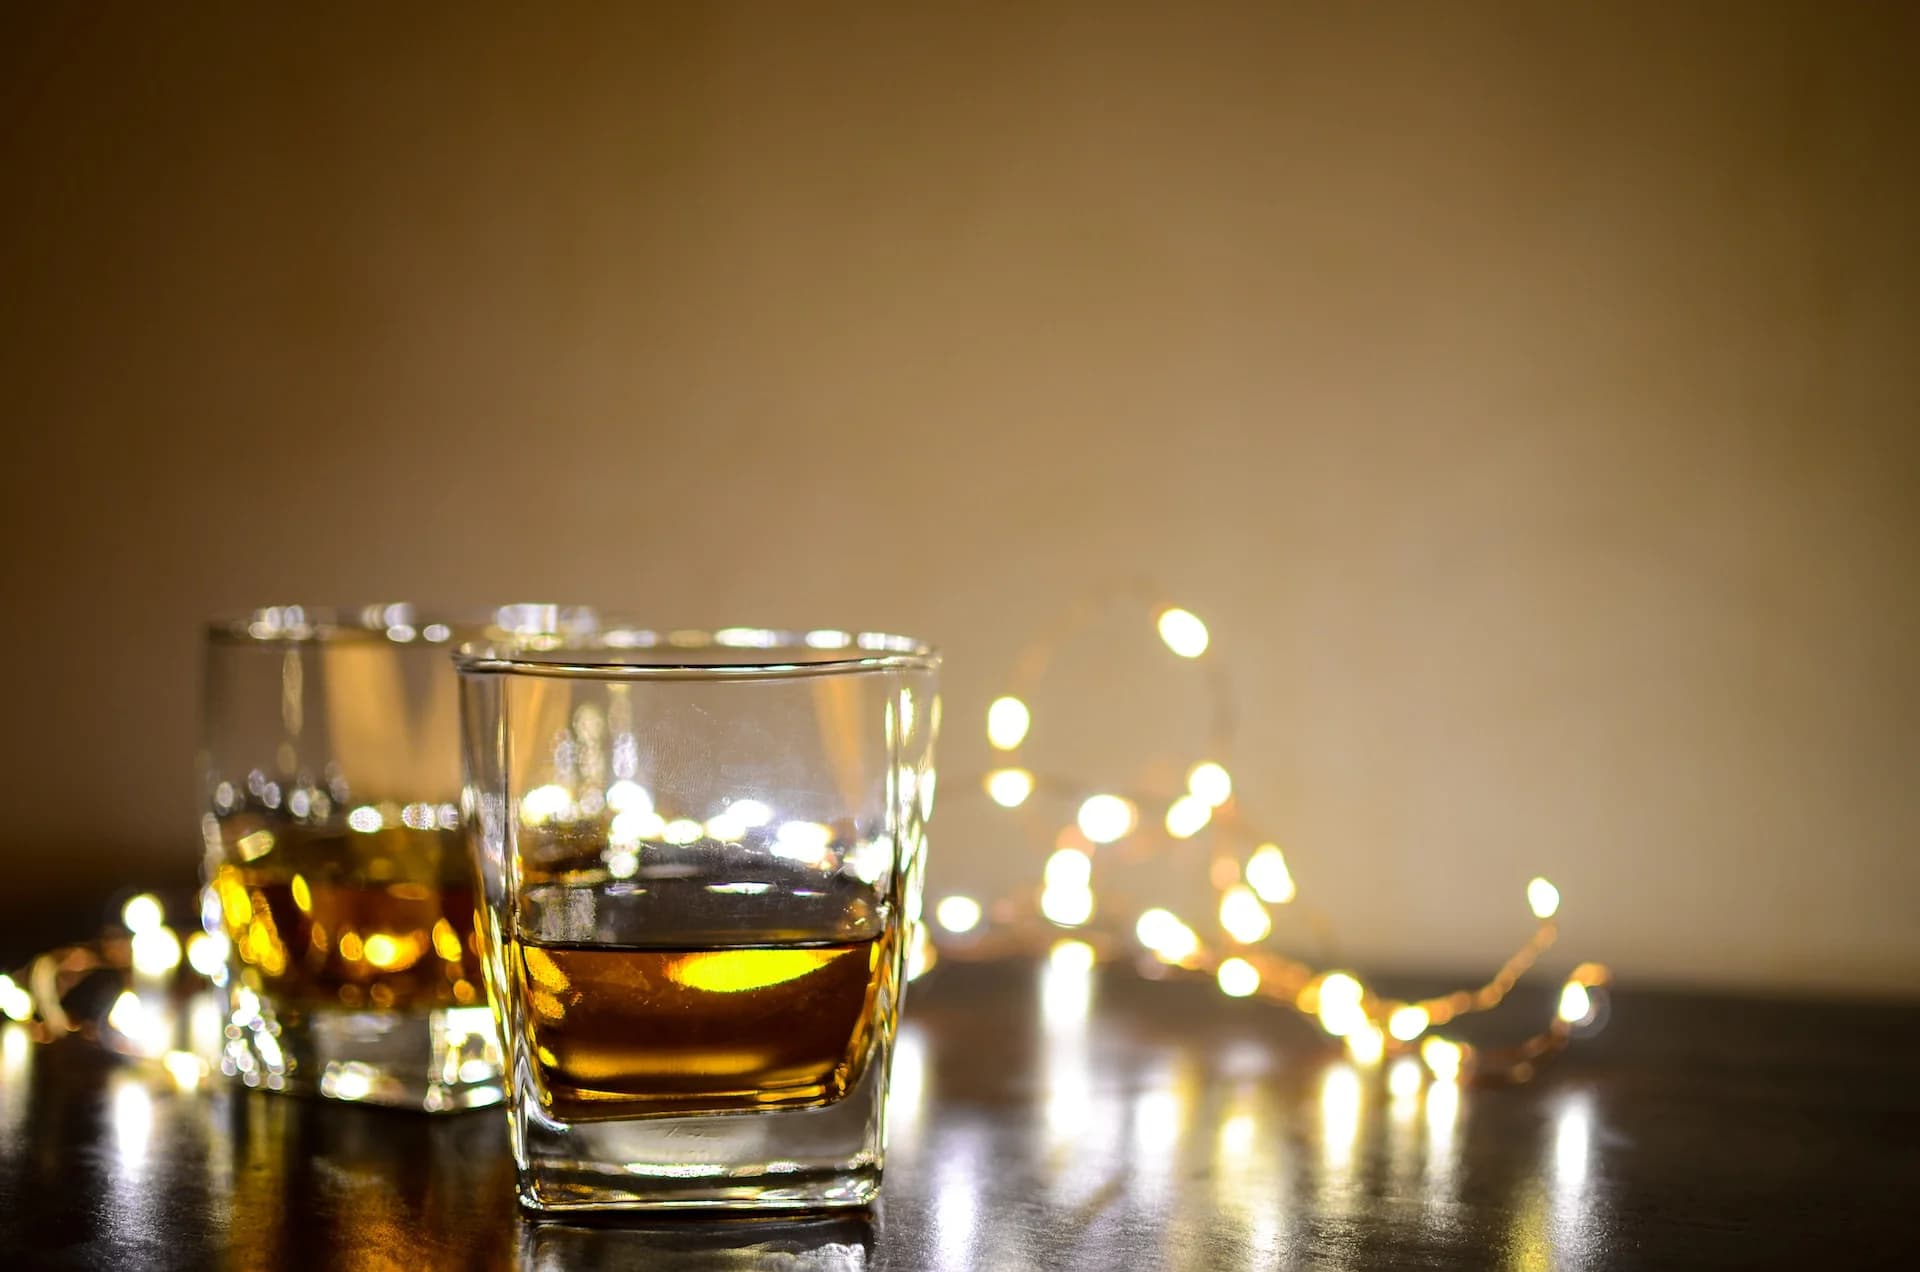 blended whisky for gifting 